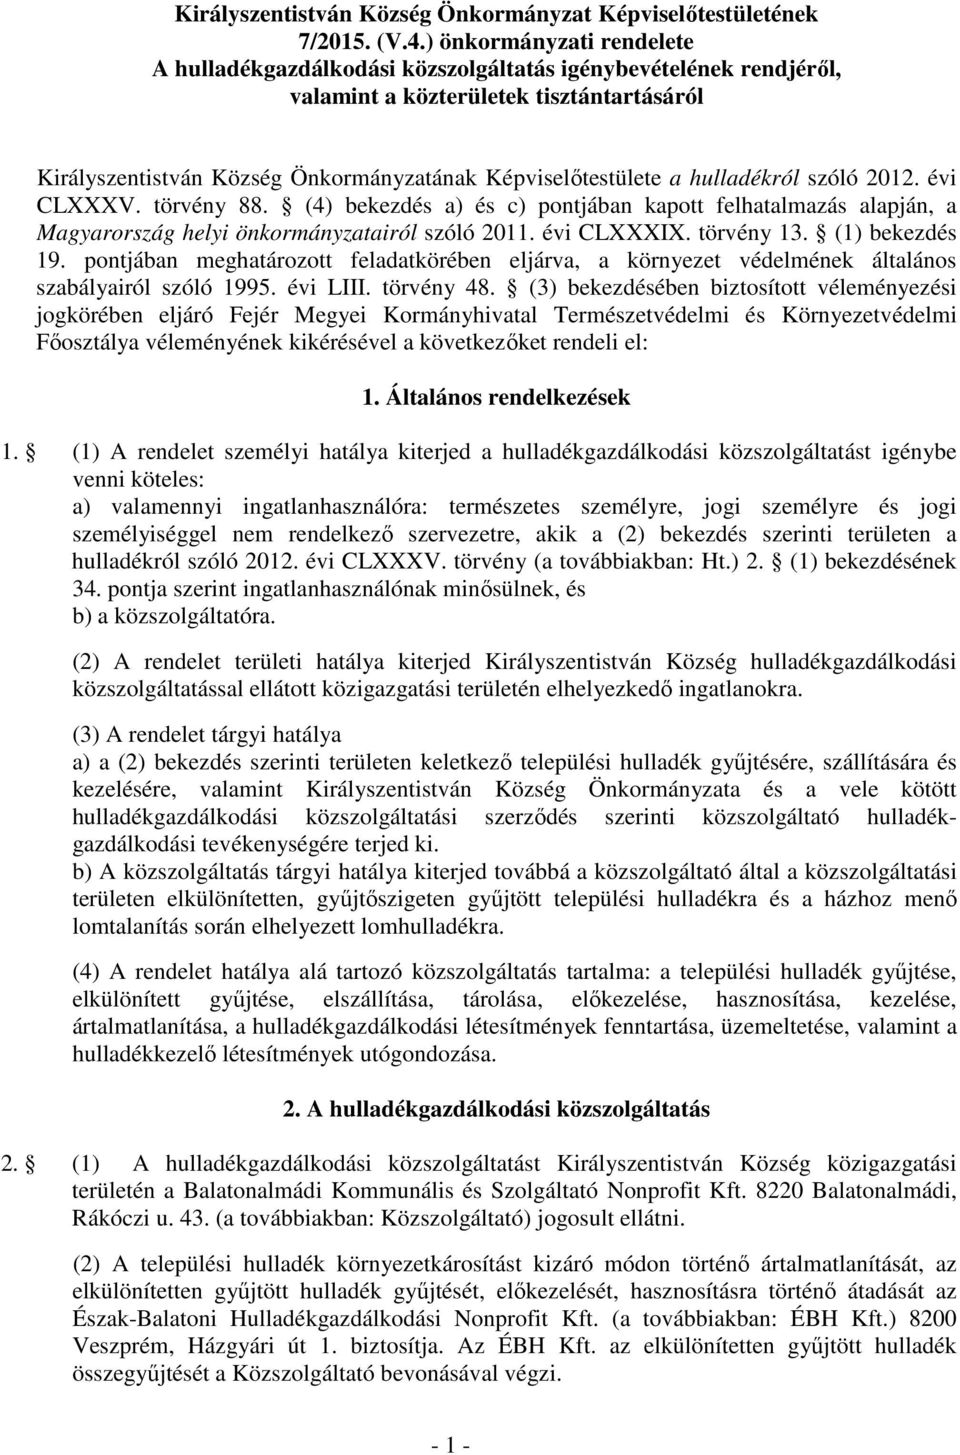 hulladékról szóló 2012. évi CLXXXV. törvény 88. (4) bekezdés a) és c) pontjában kapott felhatalmazás alapján, a Magyarország helyi önkormányzatairól szóló 2011. évi CLXXXIX. törvény 13.